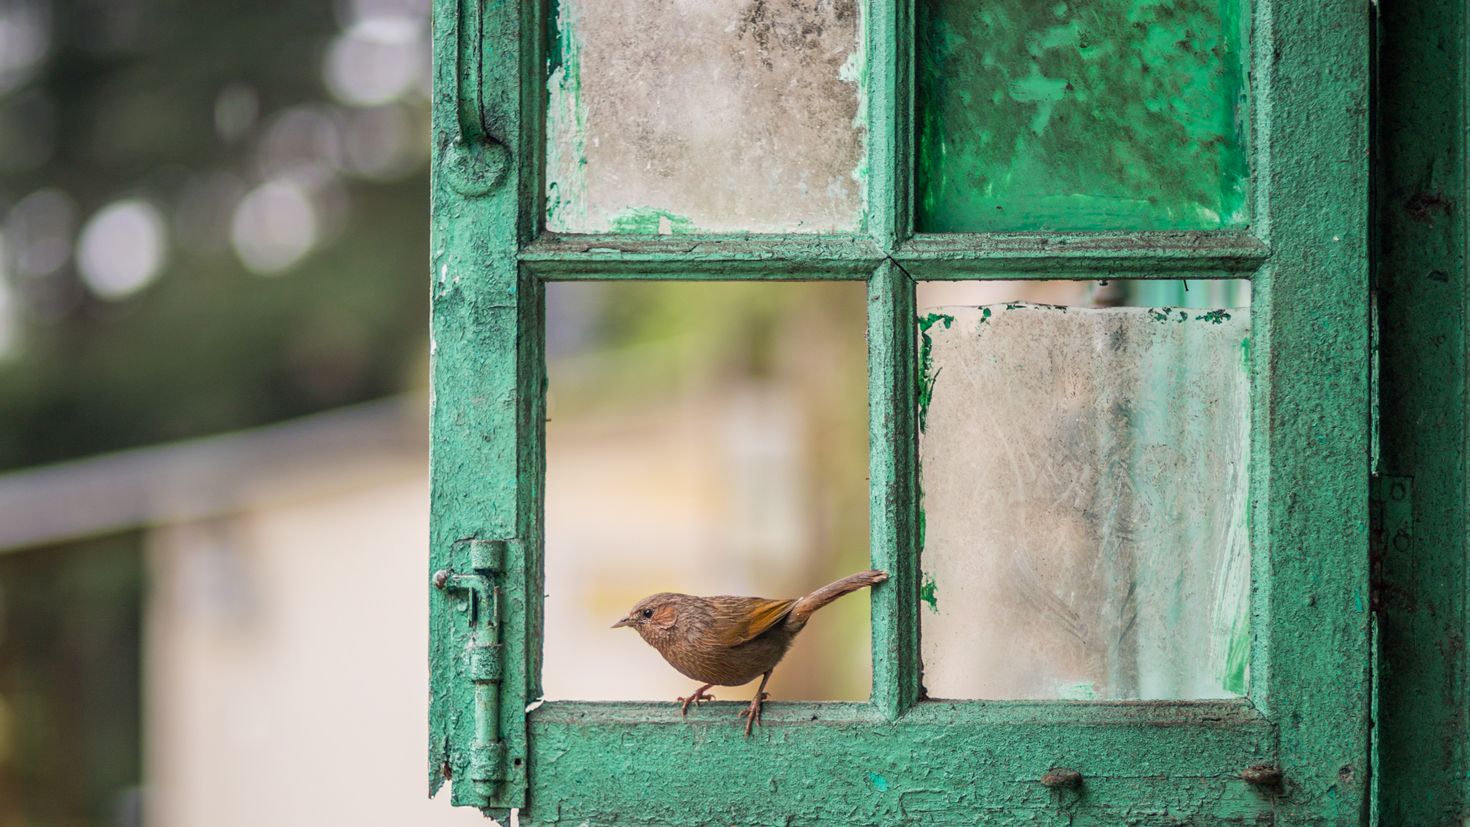 Из окна были видны стволы вишен. Птицы за окном. Птичка на окошке. Птица на подоконнике. Птицы на окна.